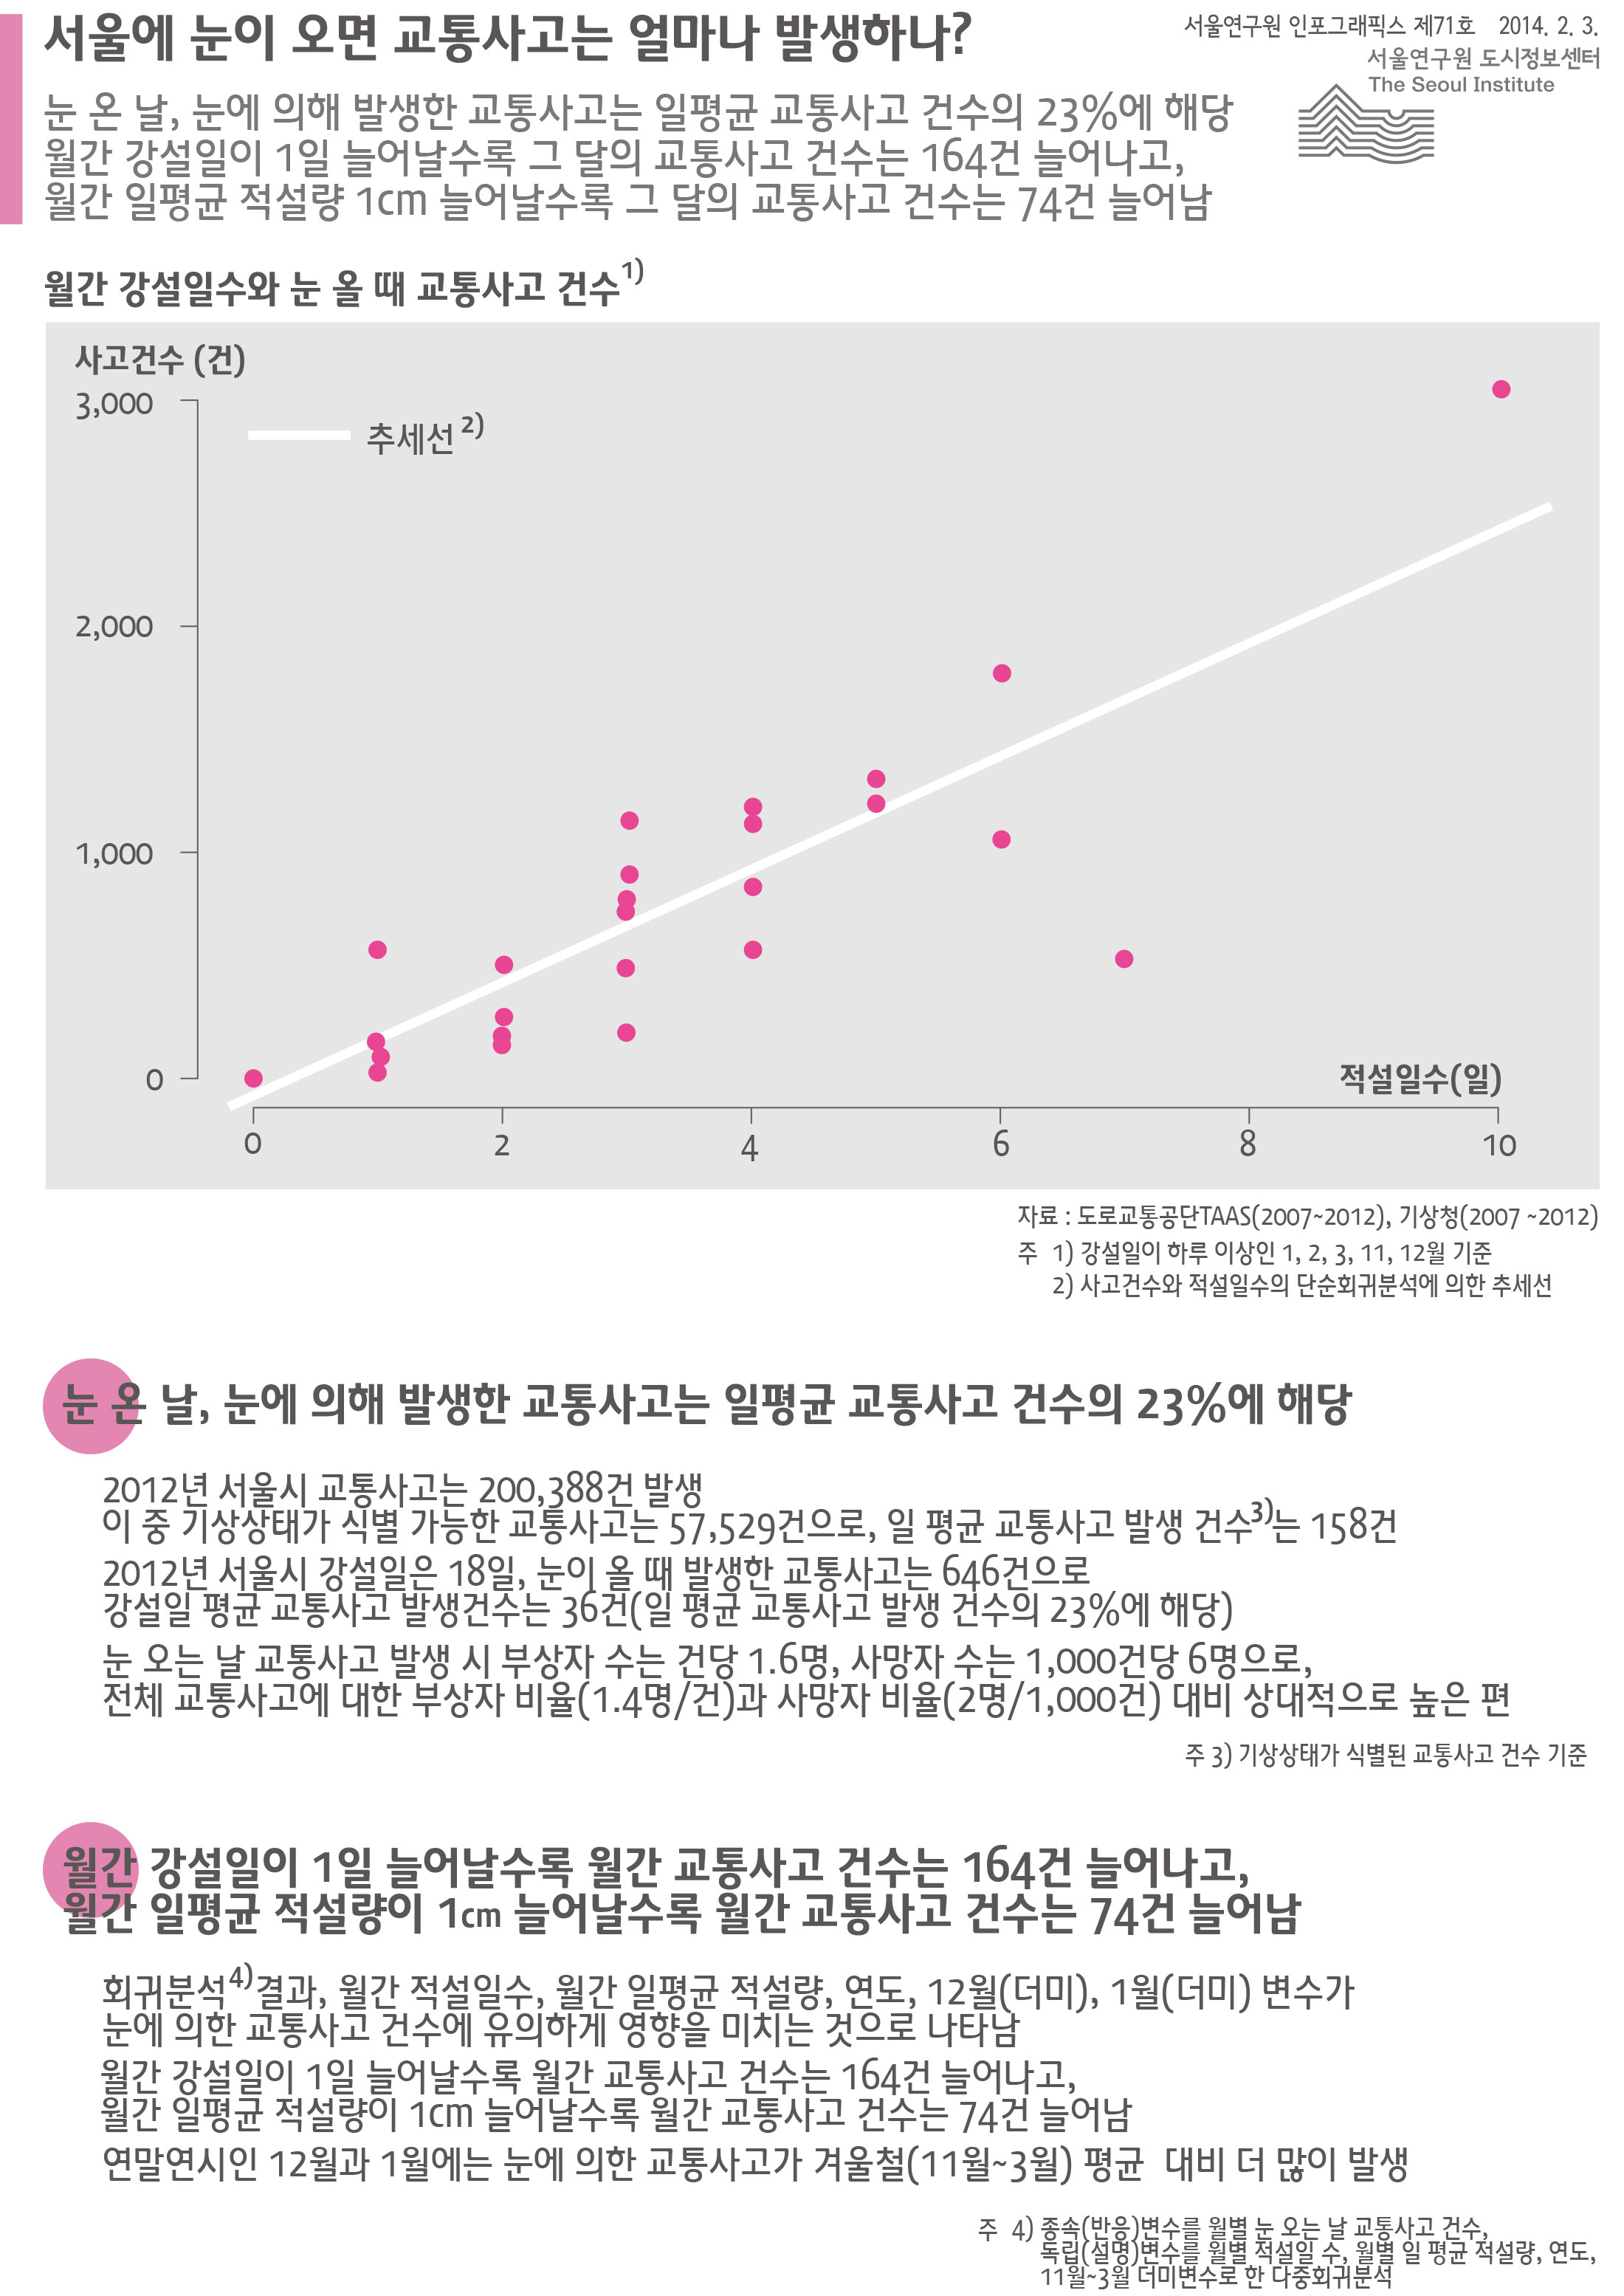 서울에 눈이 오면 교통사고는 얼마나 발생하나? 서울인포그래픽스 제71호 2014년 2월 3일 눈 온 날, 눈에 의해 발생한 교통사고는 일평균 교통사고 건수의 23%에 해당, 월간 강설일이 1일 늘어날수록 그 달의 교통사고 건수는 164건 늘어나고, 월간 일평균 적설량이 1cm 늘어날수록 그 달의 교통사고 건수는 74건 늘어남으로 정리될 수 있습니다.인포그래픽으로 제공되는 그래픽은 하단에 표로 자세히 제공됩니다.